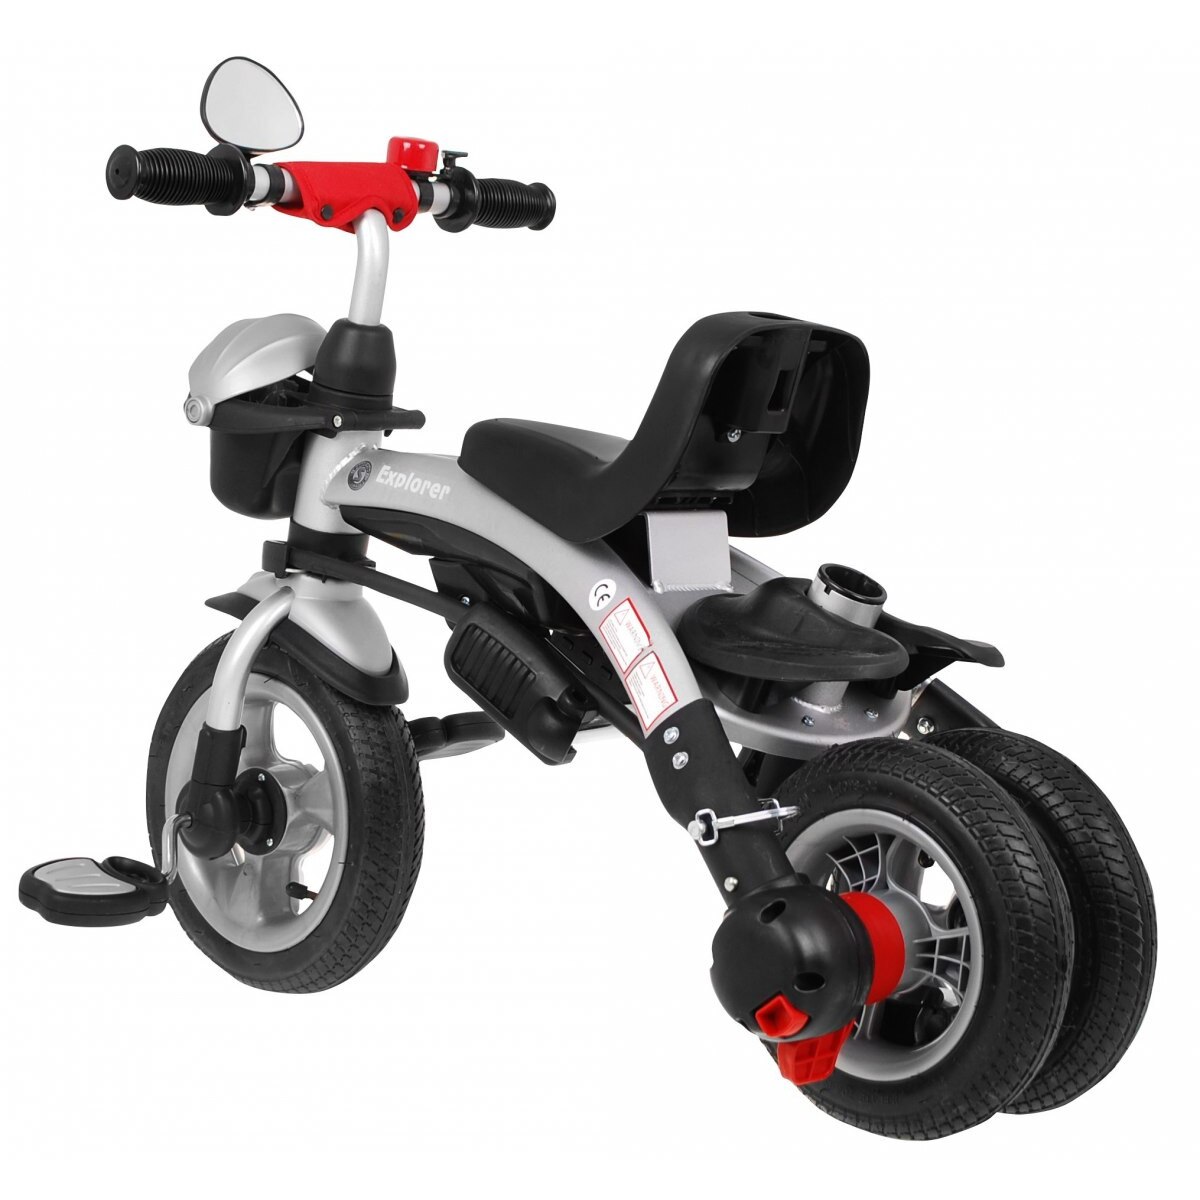 Колеса на детский трехколесный велосипед. X3 Air велосипед трёхколёсный. Велосипед трёхколёсный детский x3 Air. Детский велосипед Explorer Sport 18. Трехколесный велосипед Explorer.